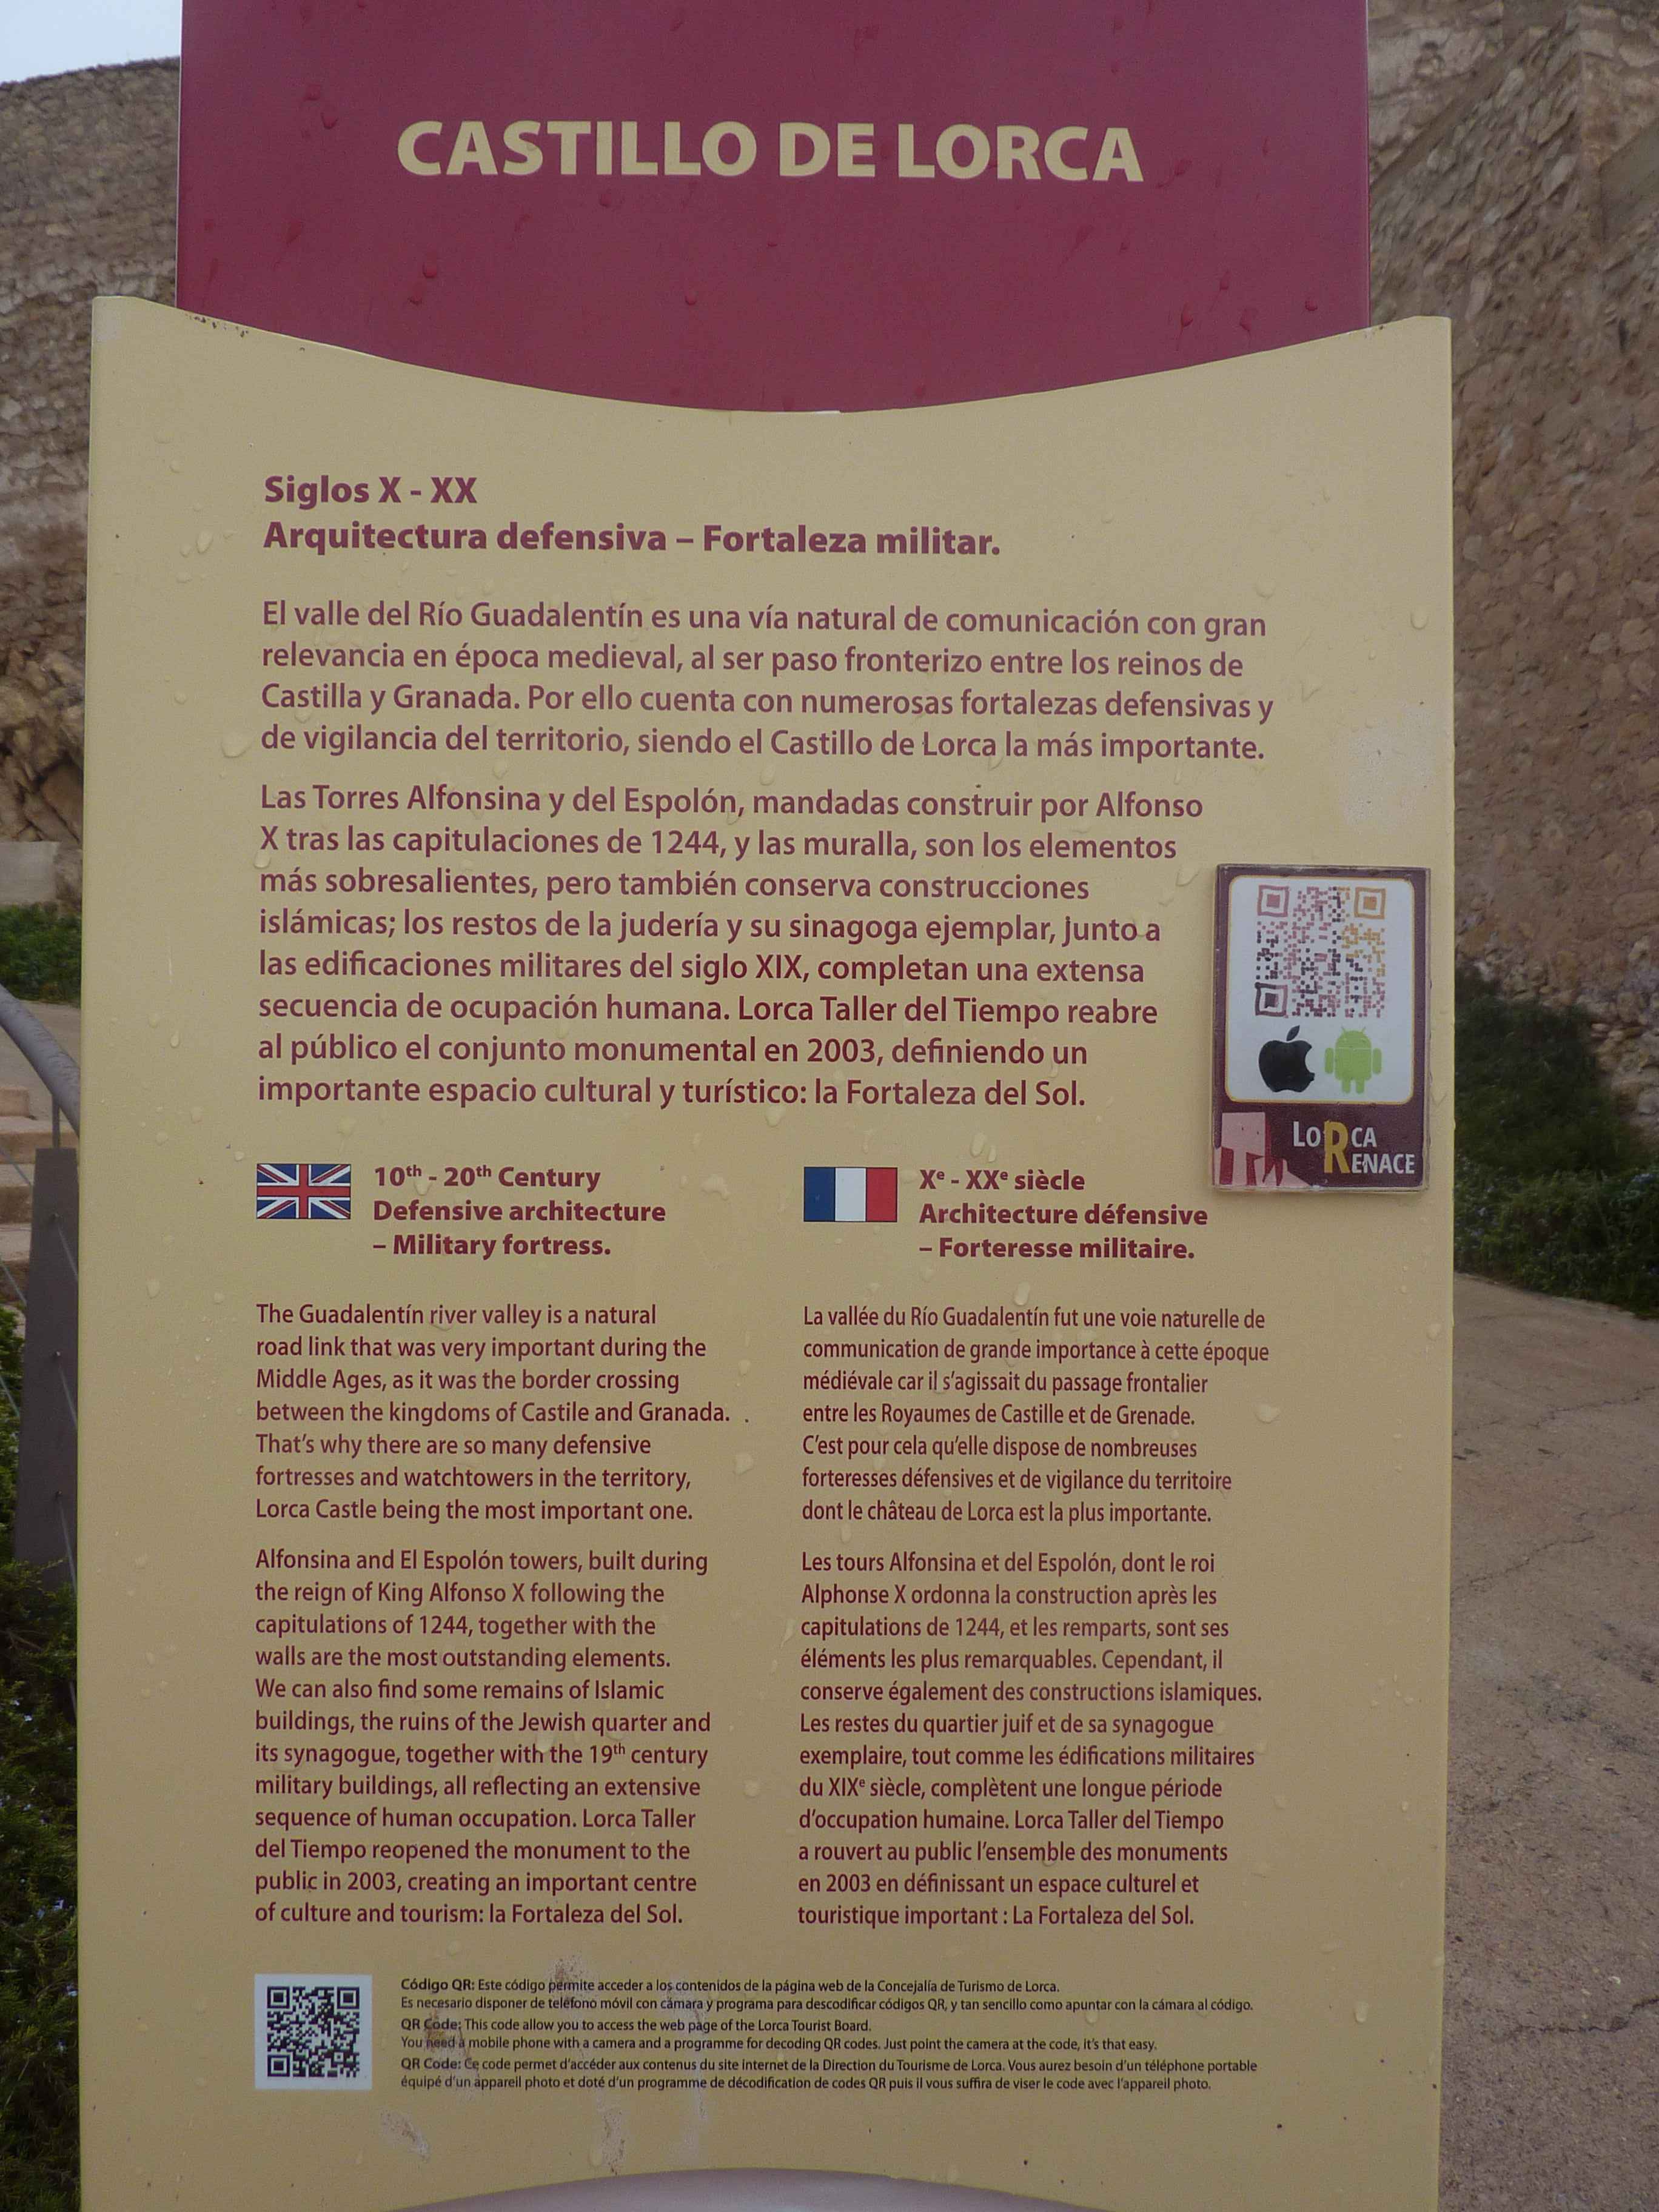 Histoire Du Castillo De Lorca en Images